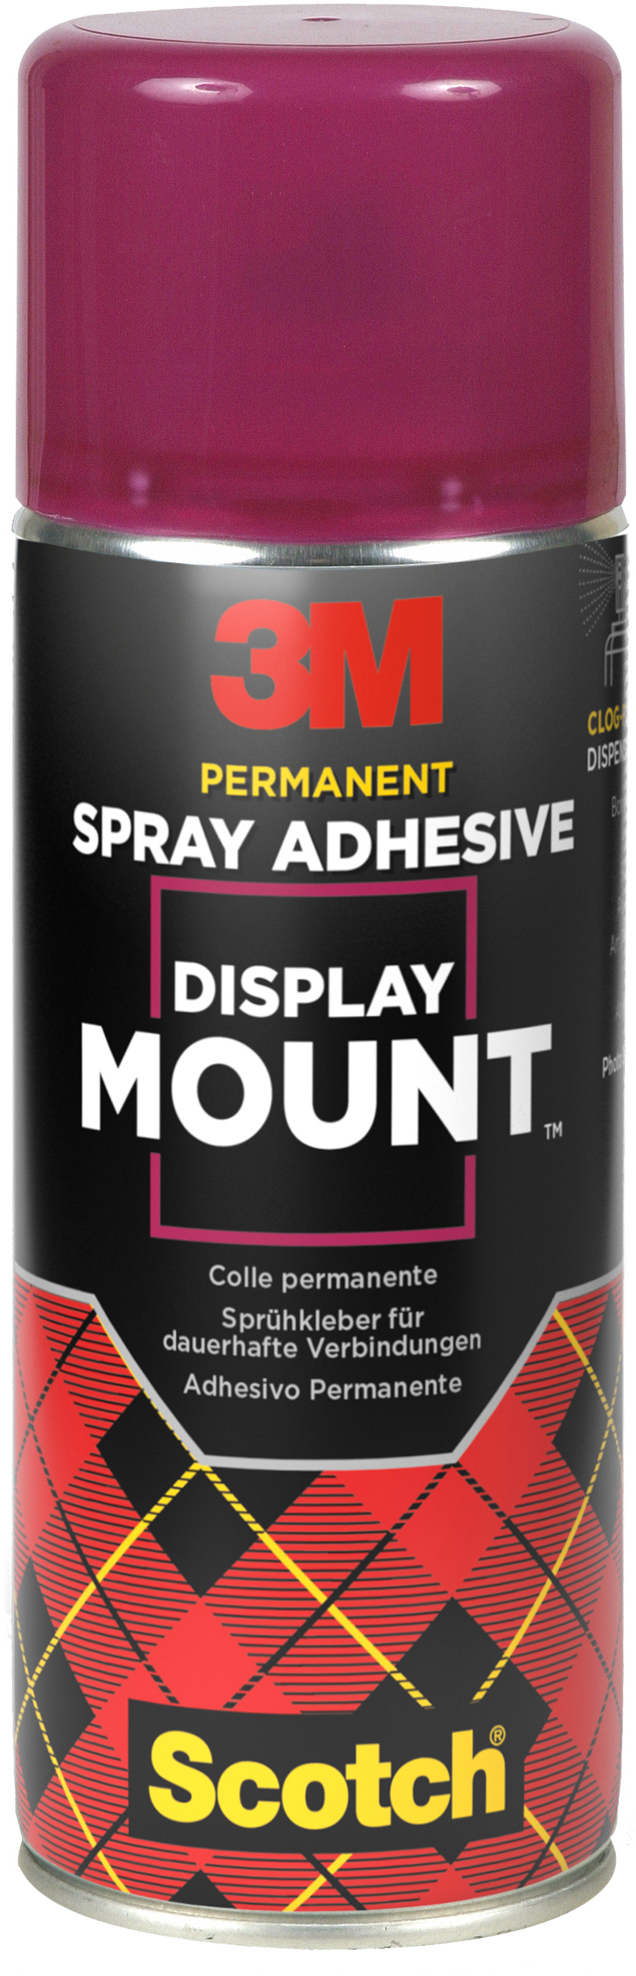 3M Spray DisplayMount 400ml DM/400 Sprühkleber